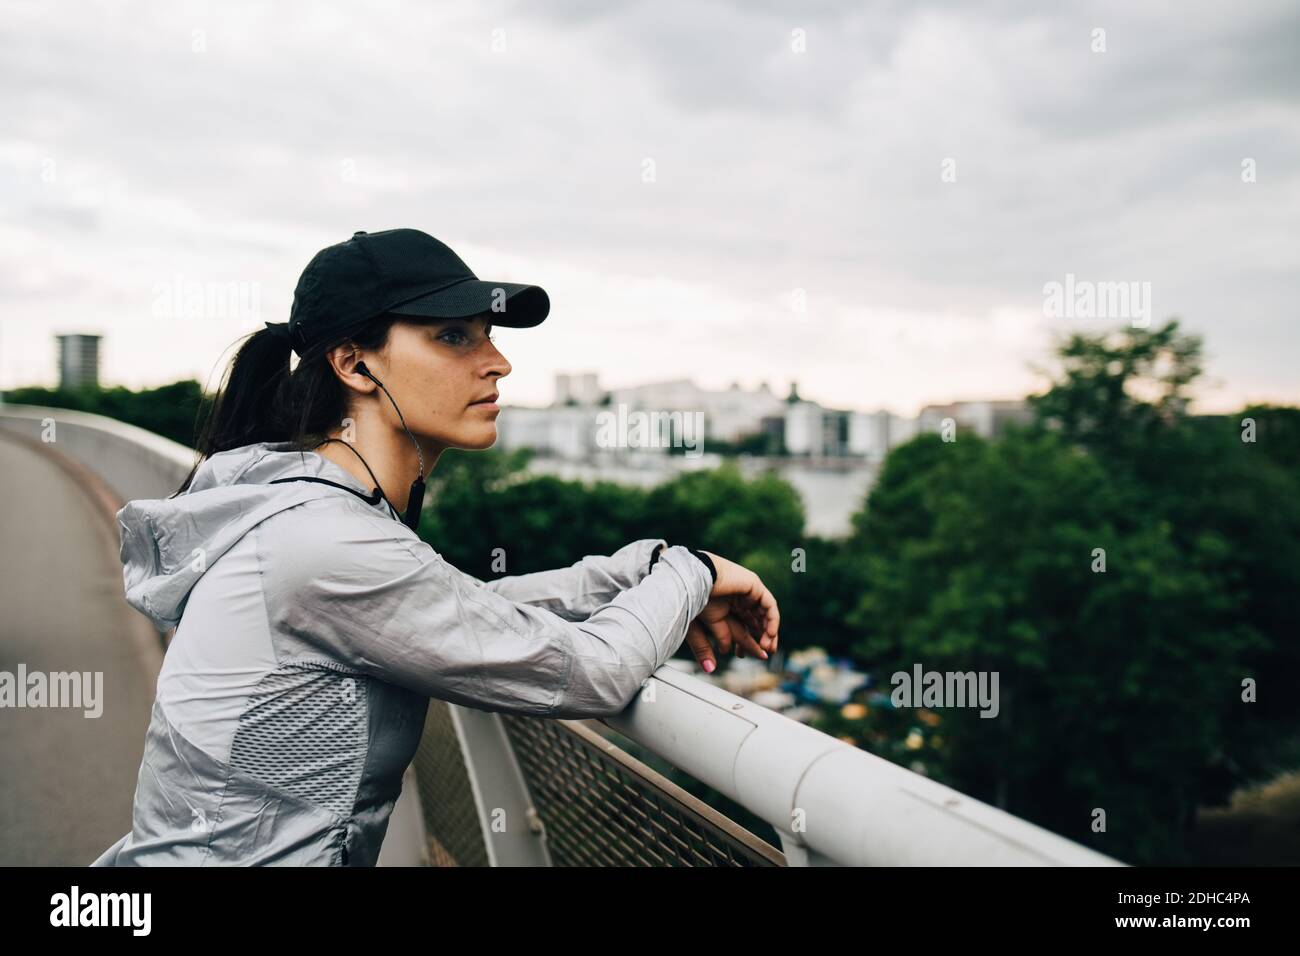 Müde Sportlerin schaut weg, während sie sich auf dem Geländer am Steg lehnt In der Stadt Stockfoto